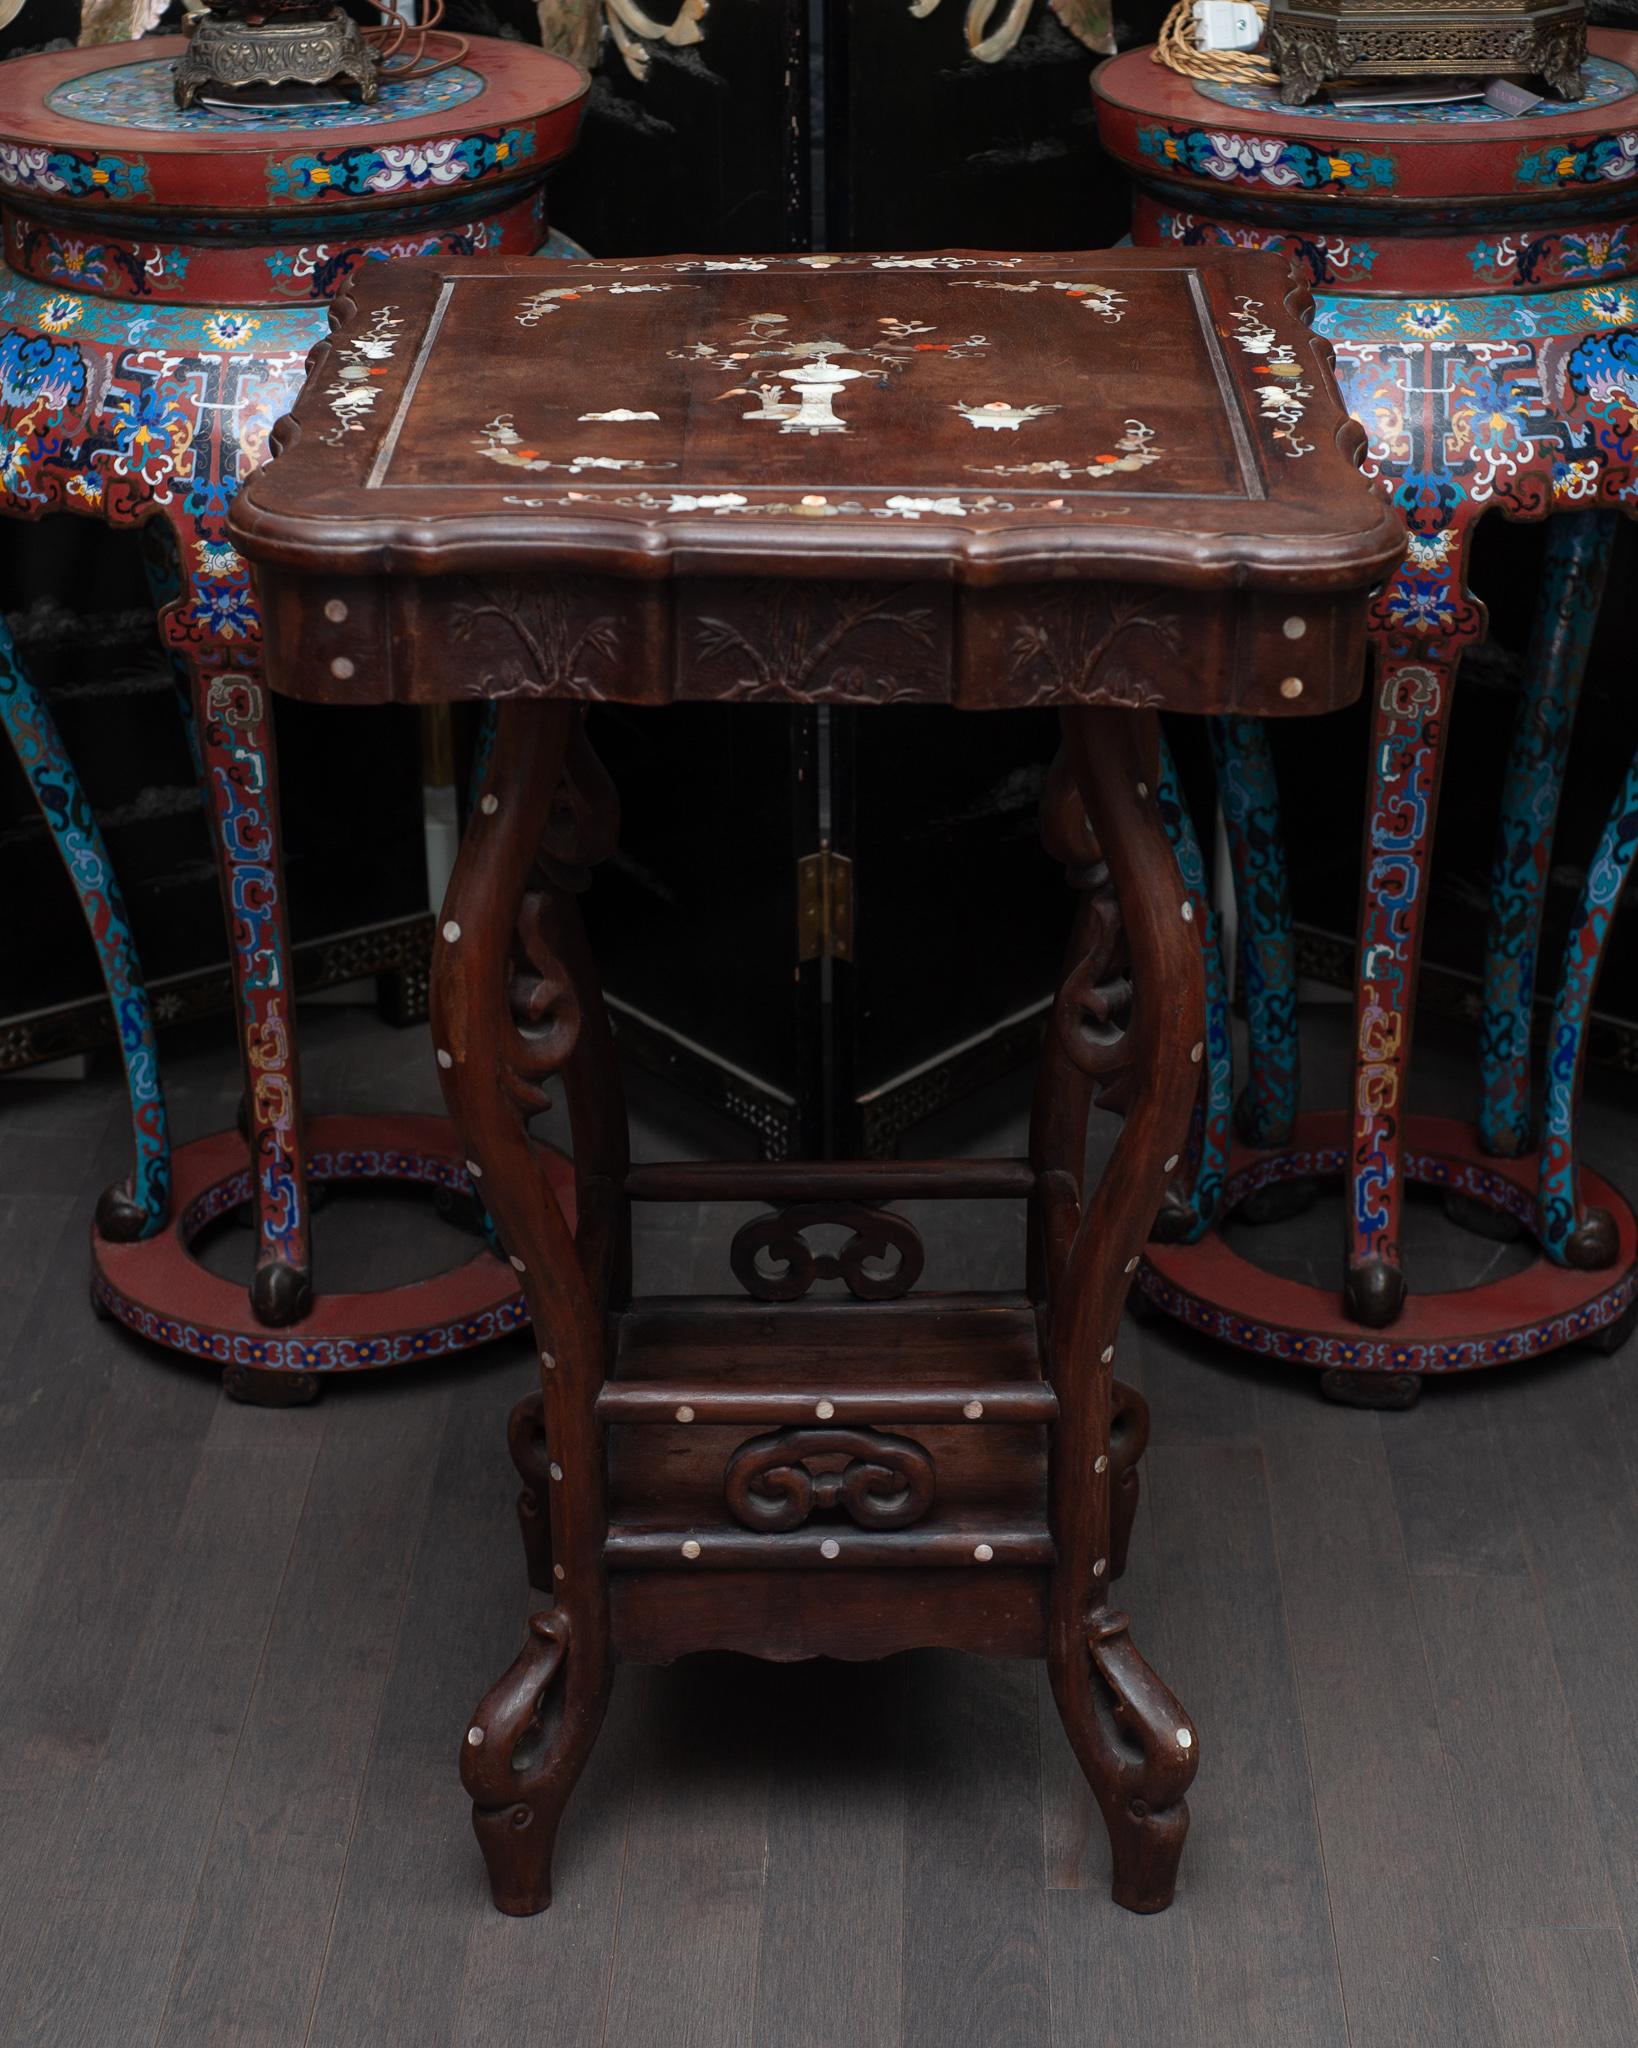 Une inhabituelle table chinoise ancienne en bois sculpté avec une belle incrustation de nacre.